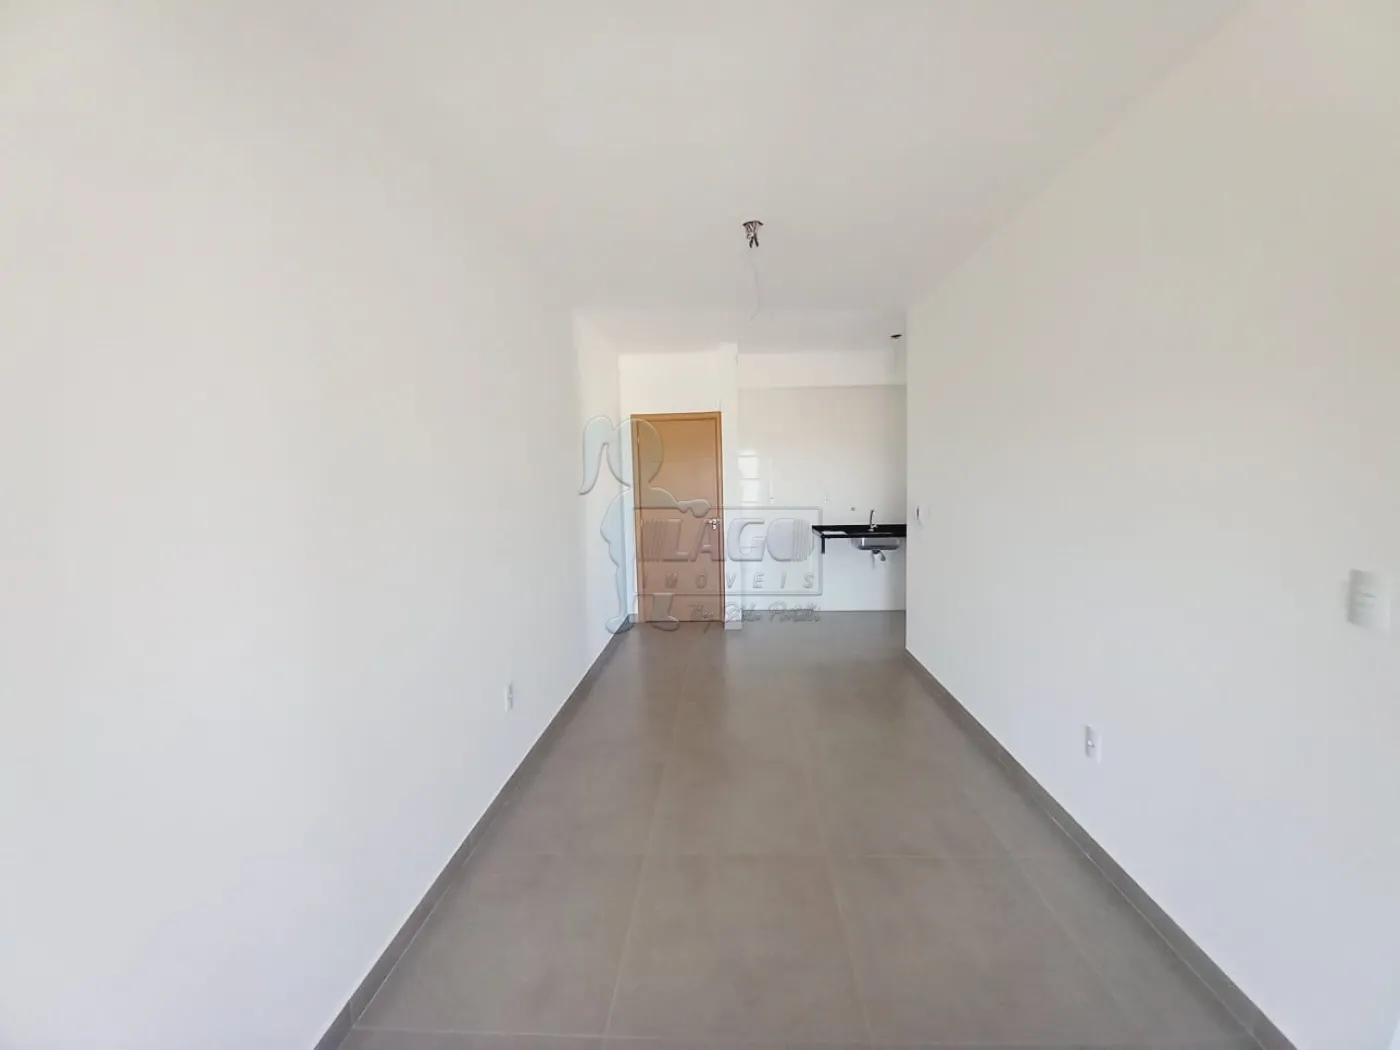 Alugar Apartamento / Padrão em Ribeirão Preto R$ 1.430,00 - Foto 4